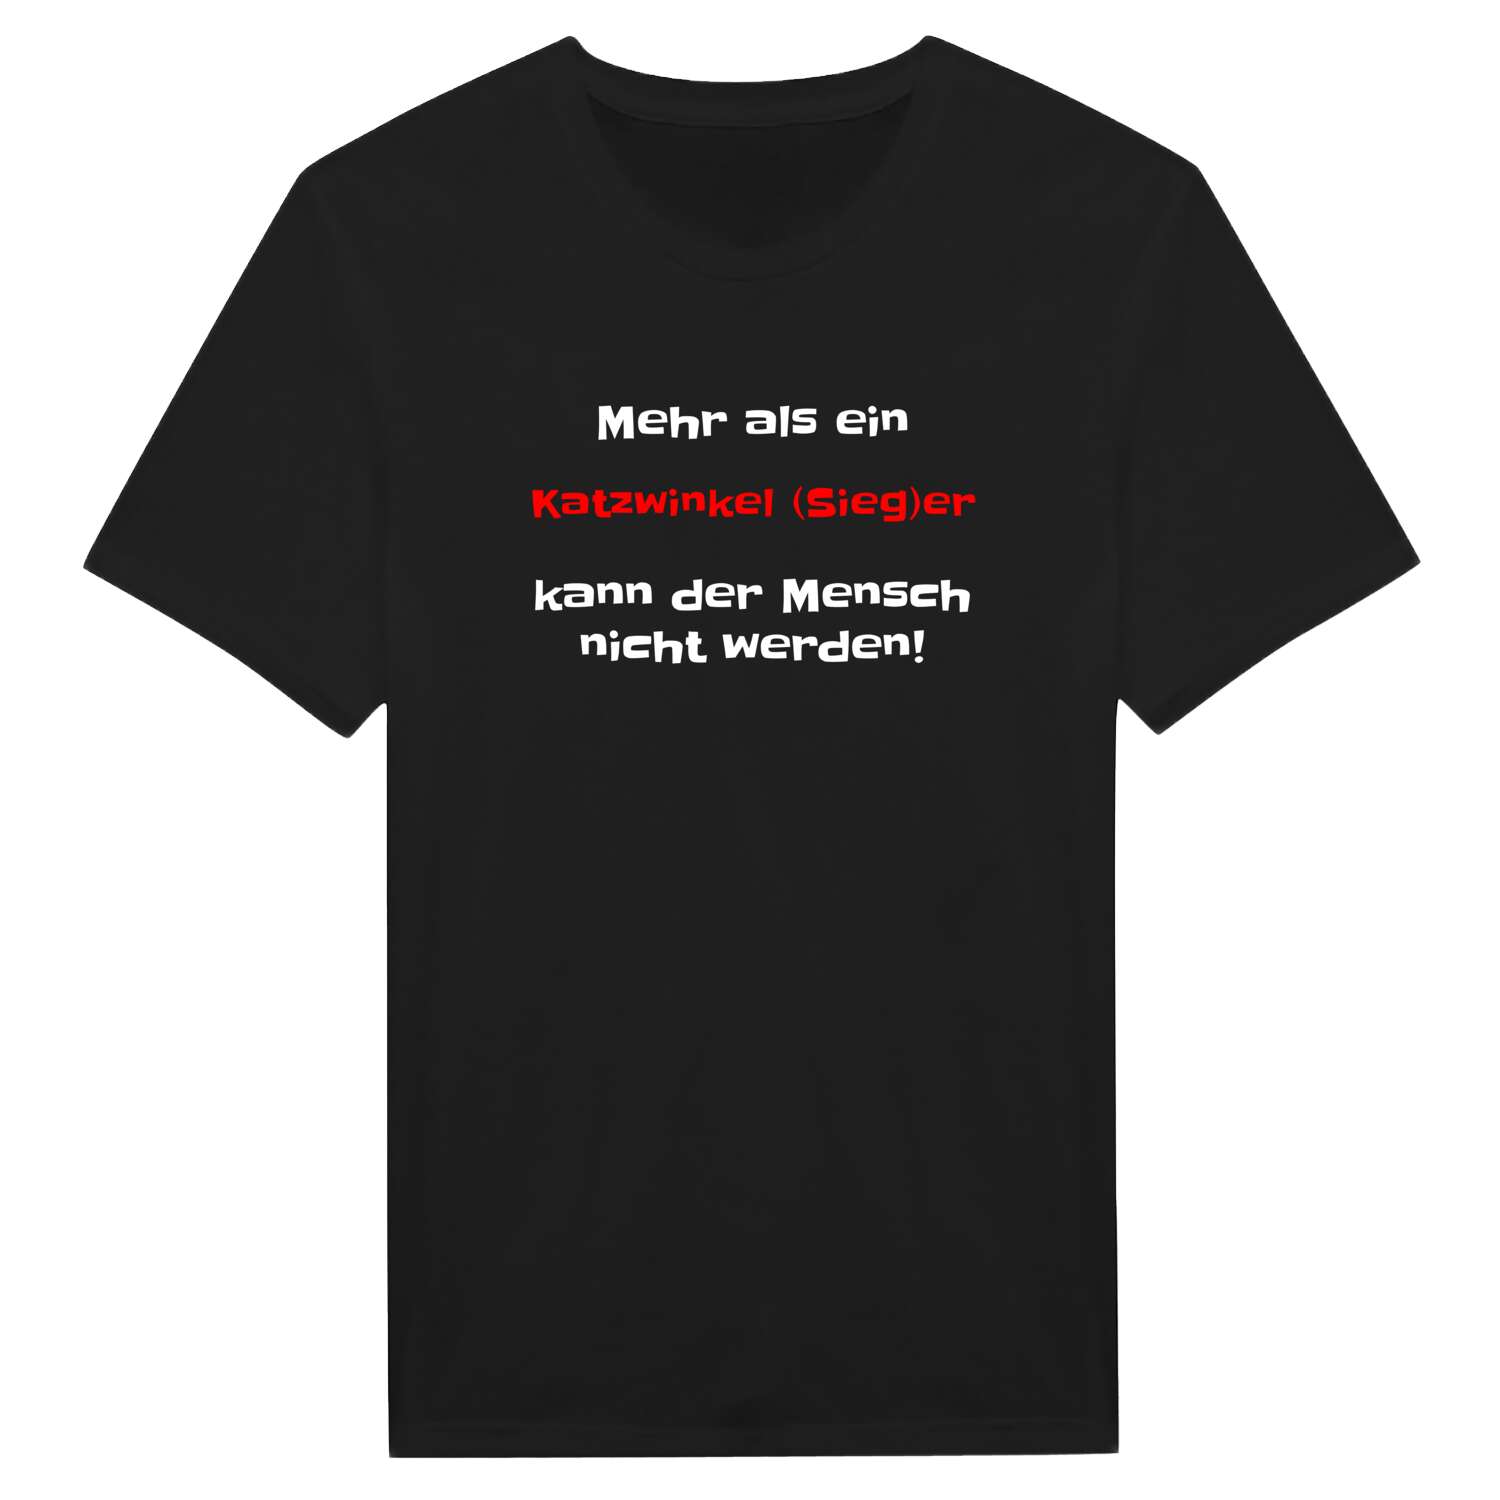 Katzwinkel (Sieg) T-Shirt »Mehr als ein«